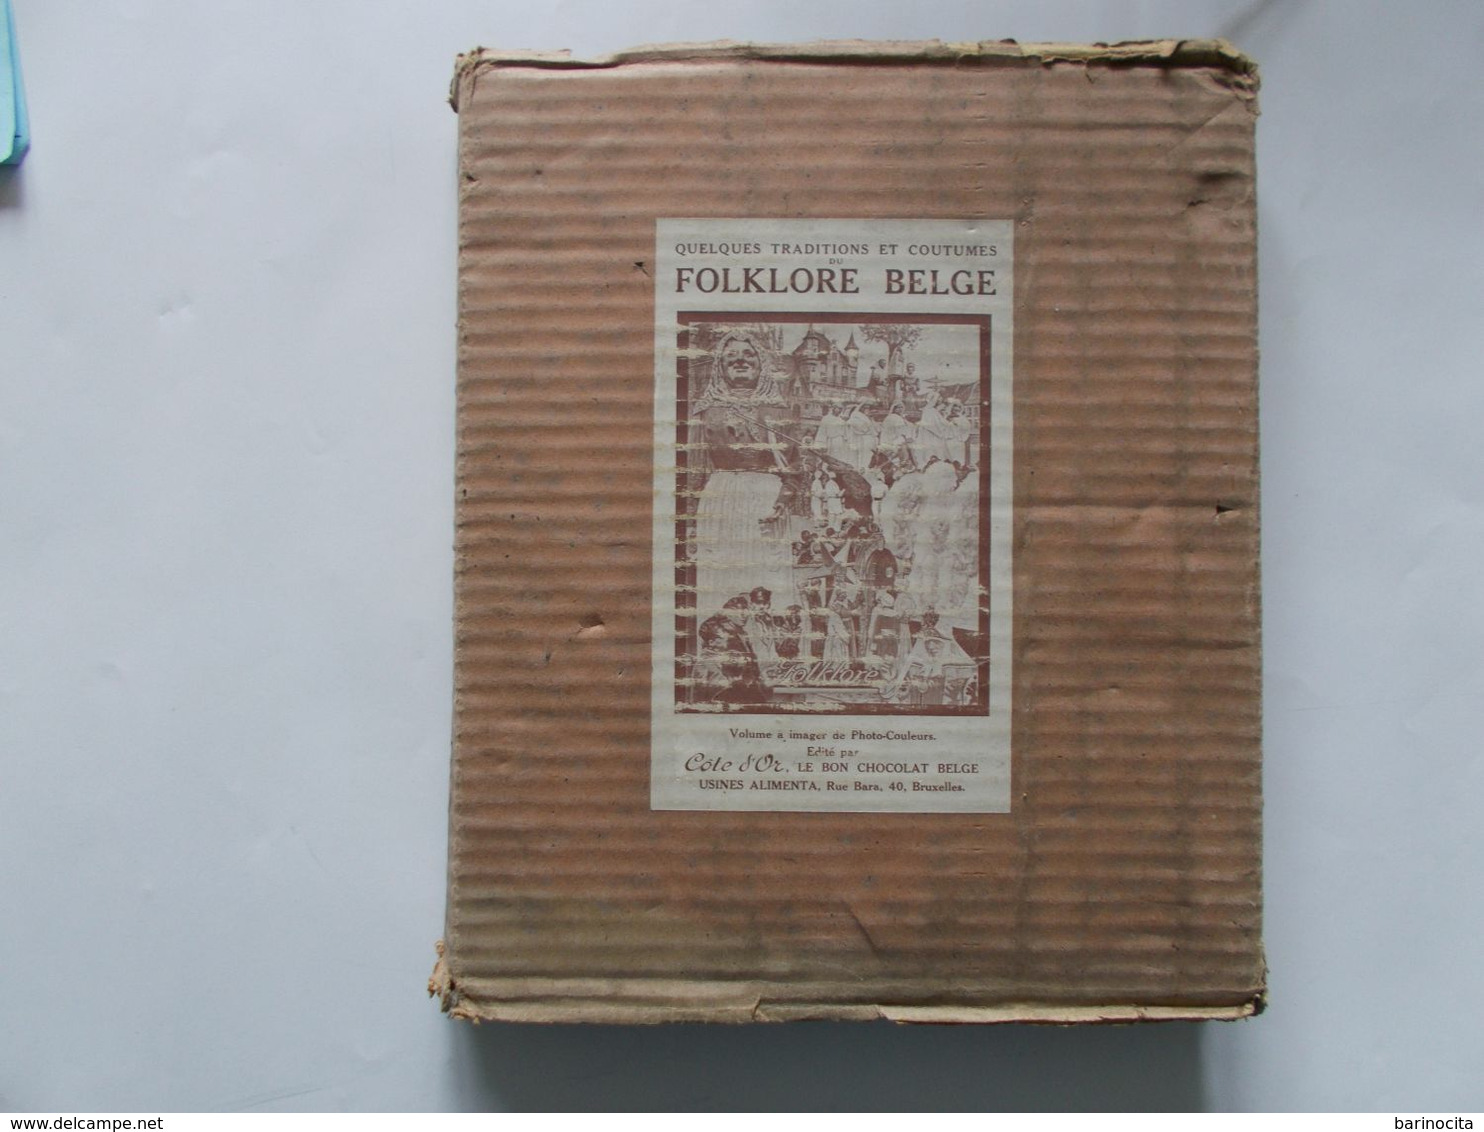 COTE D'OR -  FOLKLORE BELGE      Abum Complet  Dans Son Emballage D'origine -   Bon Etat Voir Photos - Albumes & Catálogos